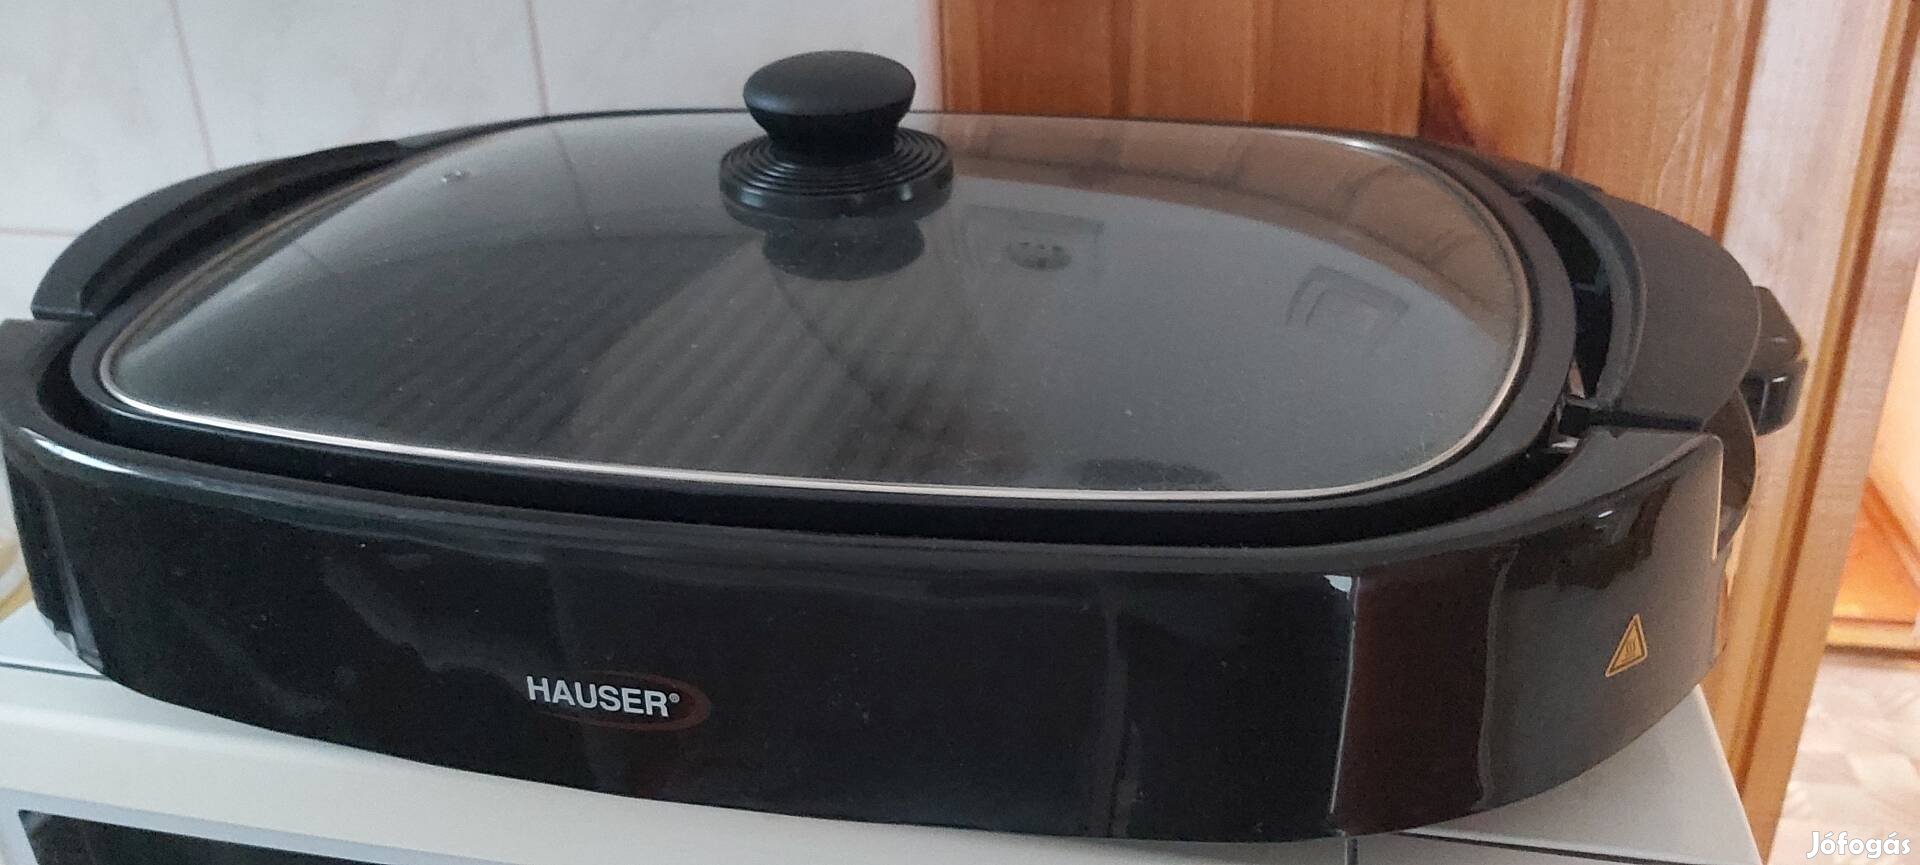 Új! Hauser márkájú asztali grillsütő eladó!